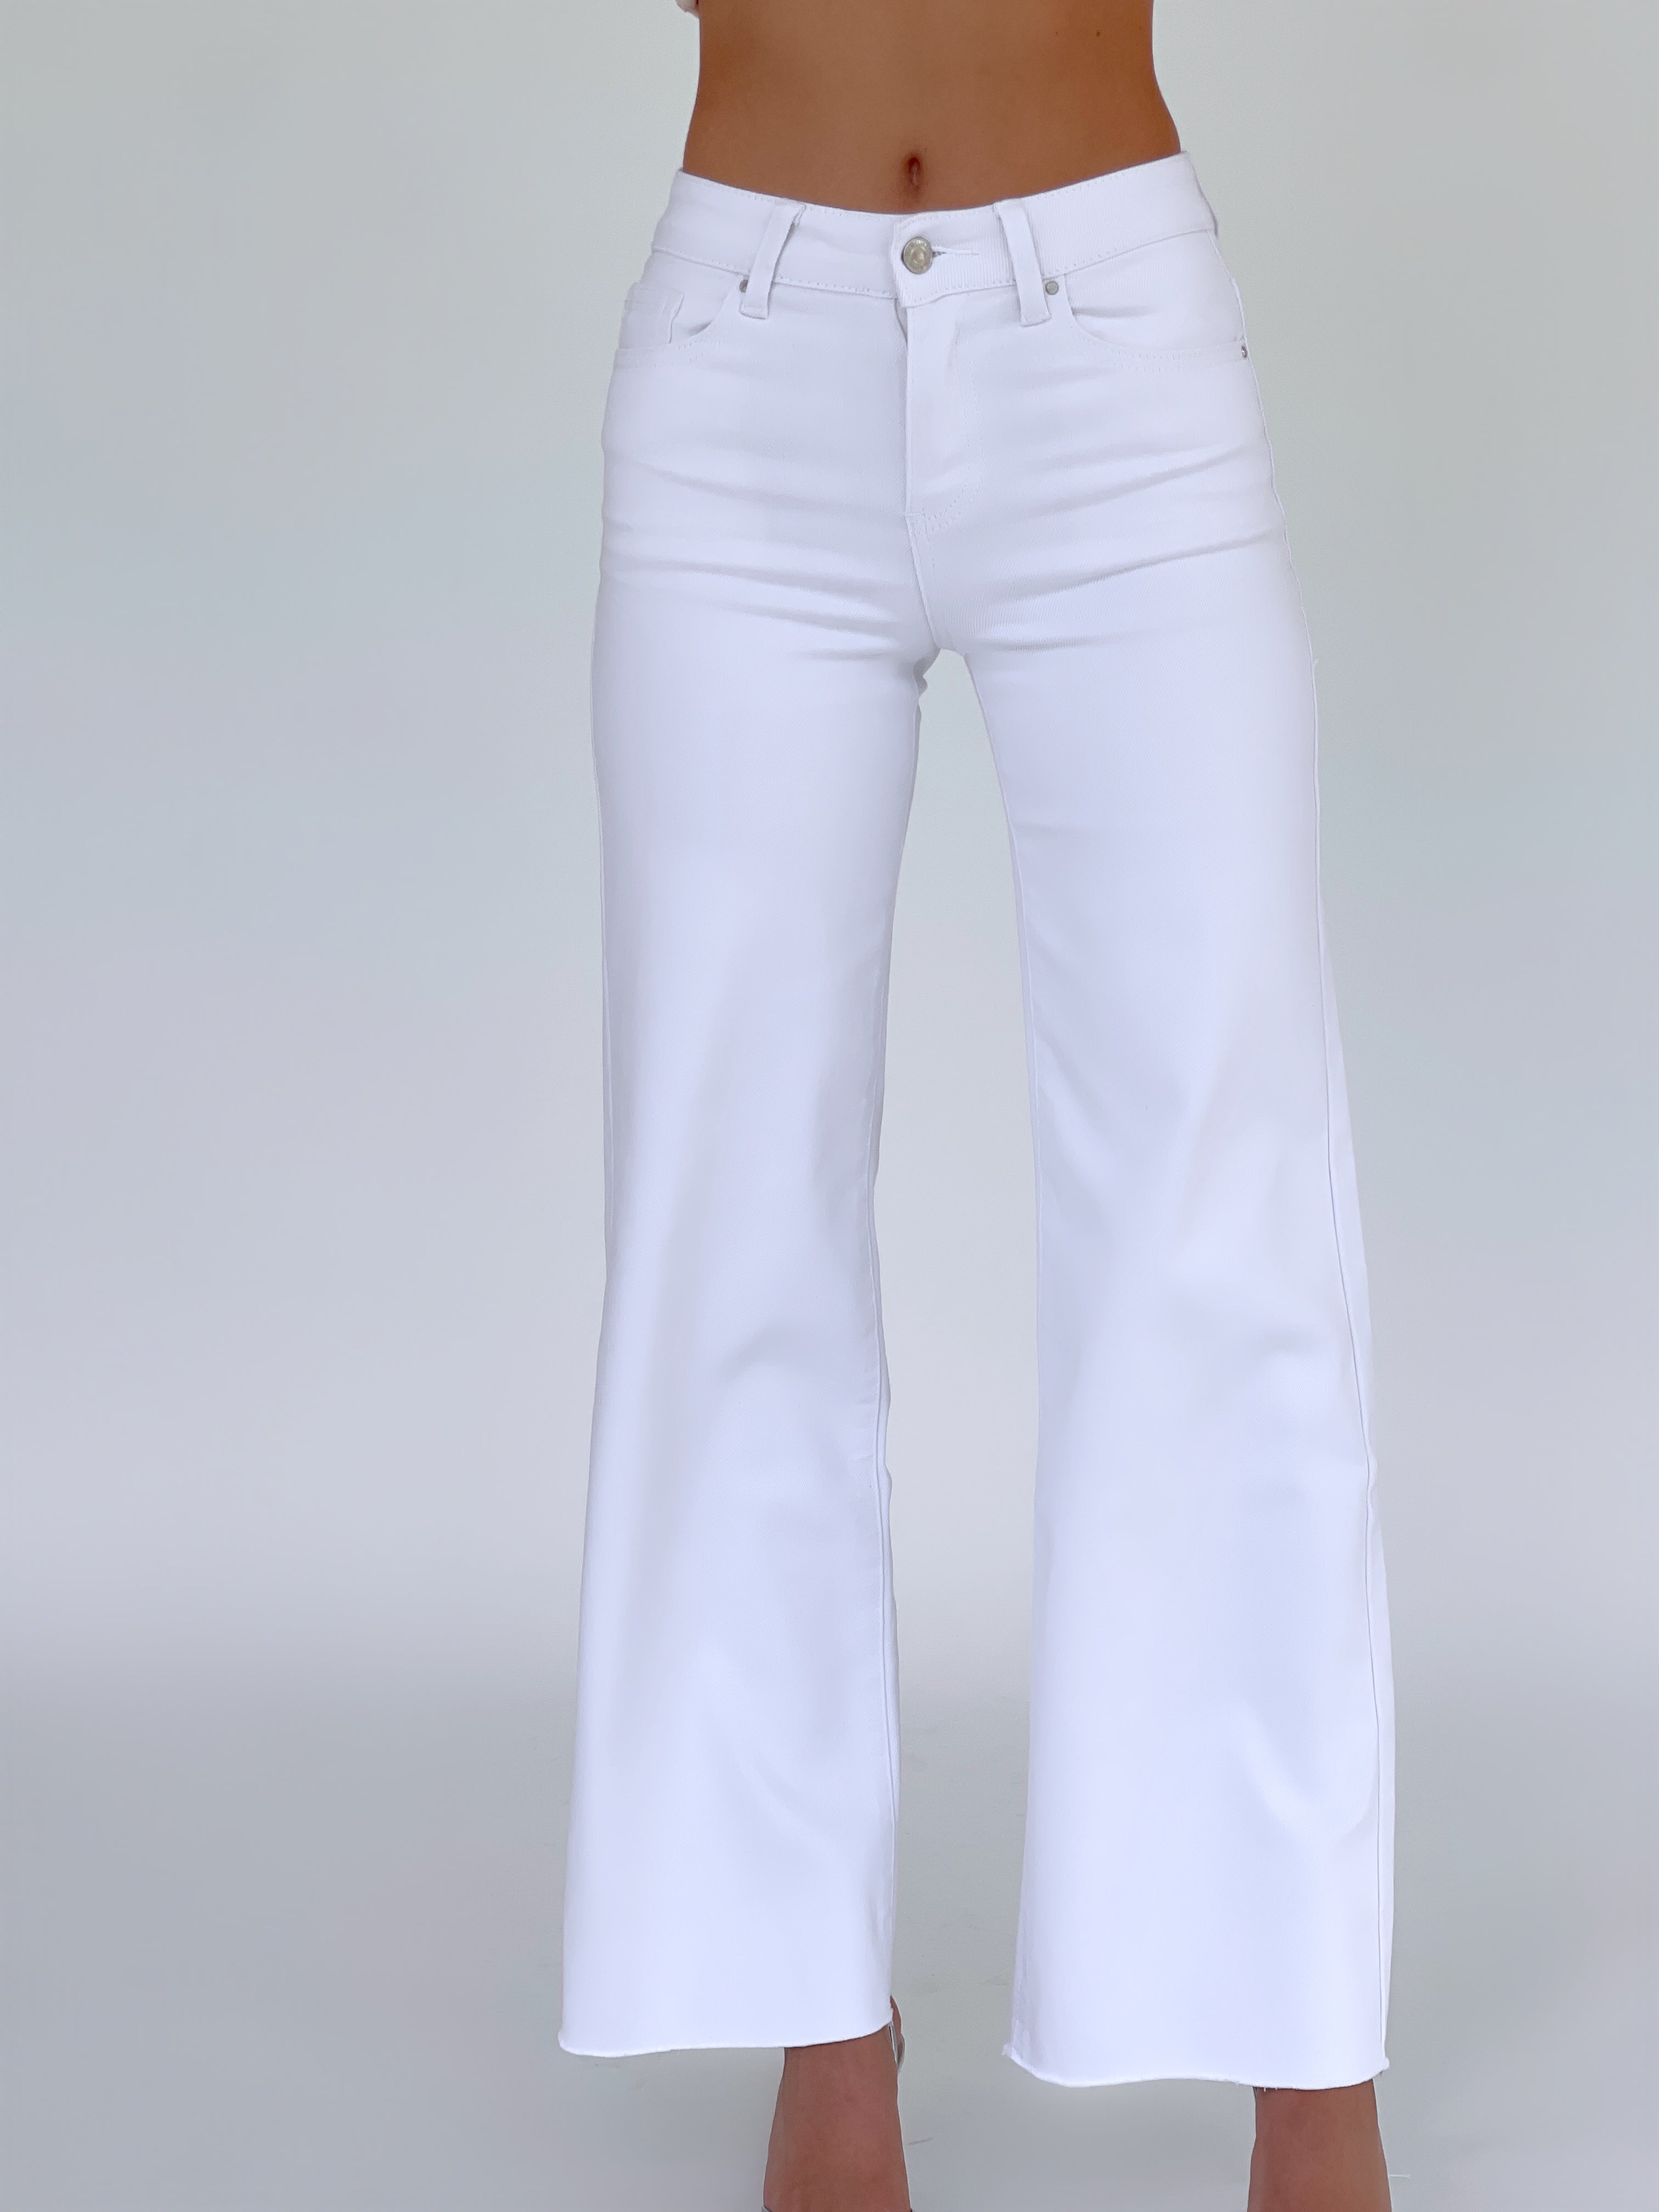 ג׳ינס רחב לבן